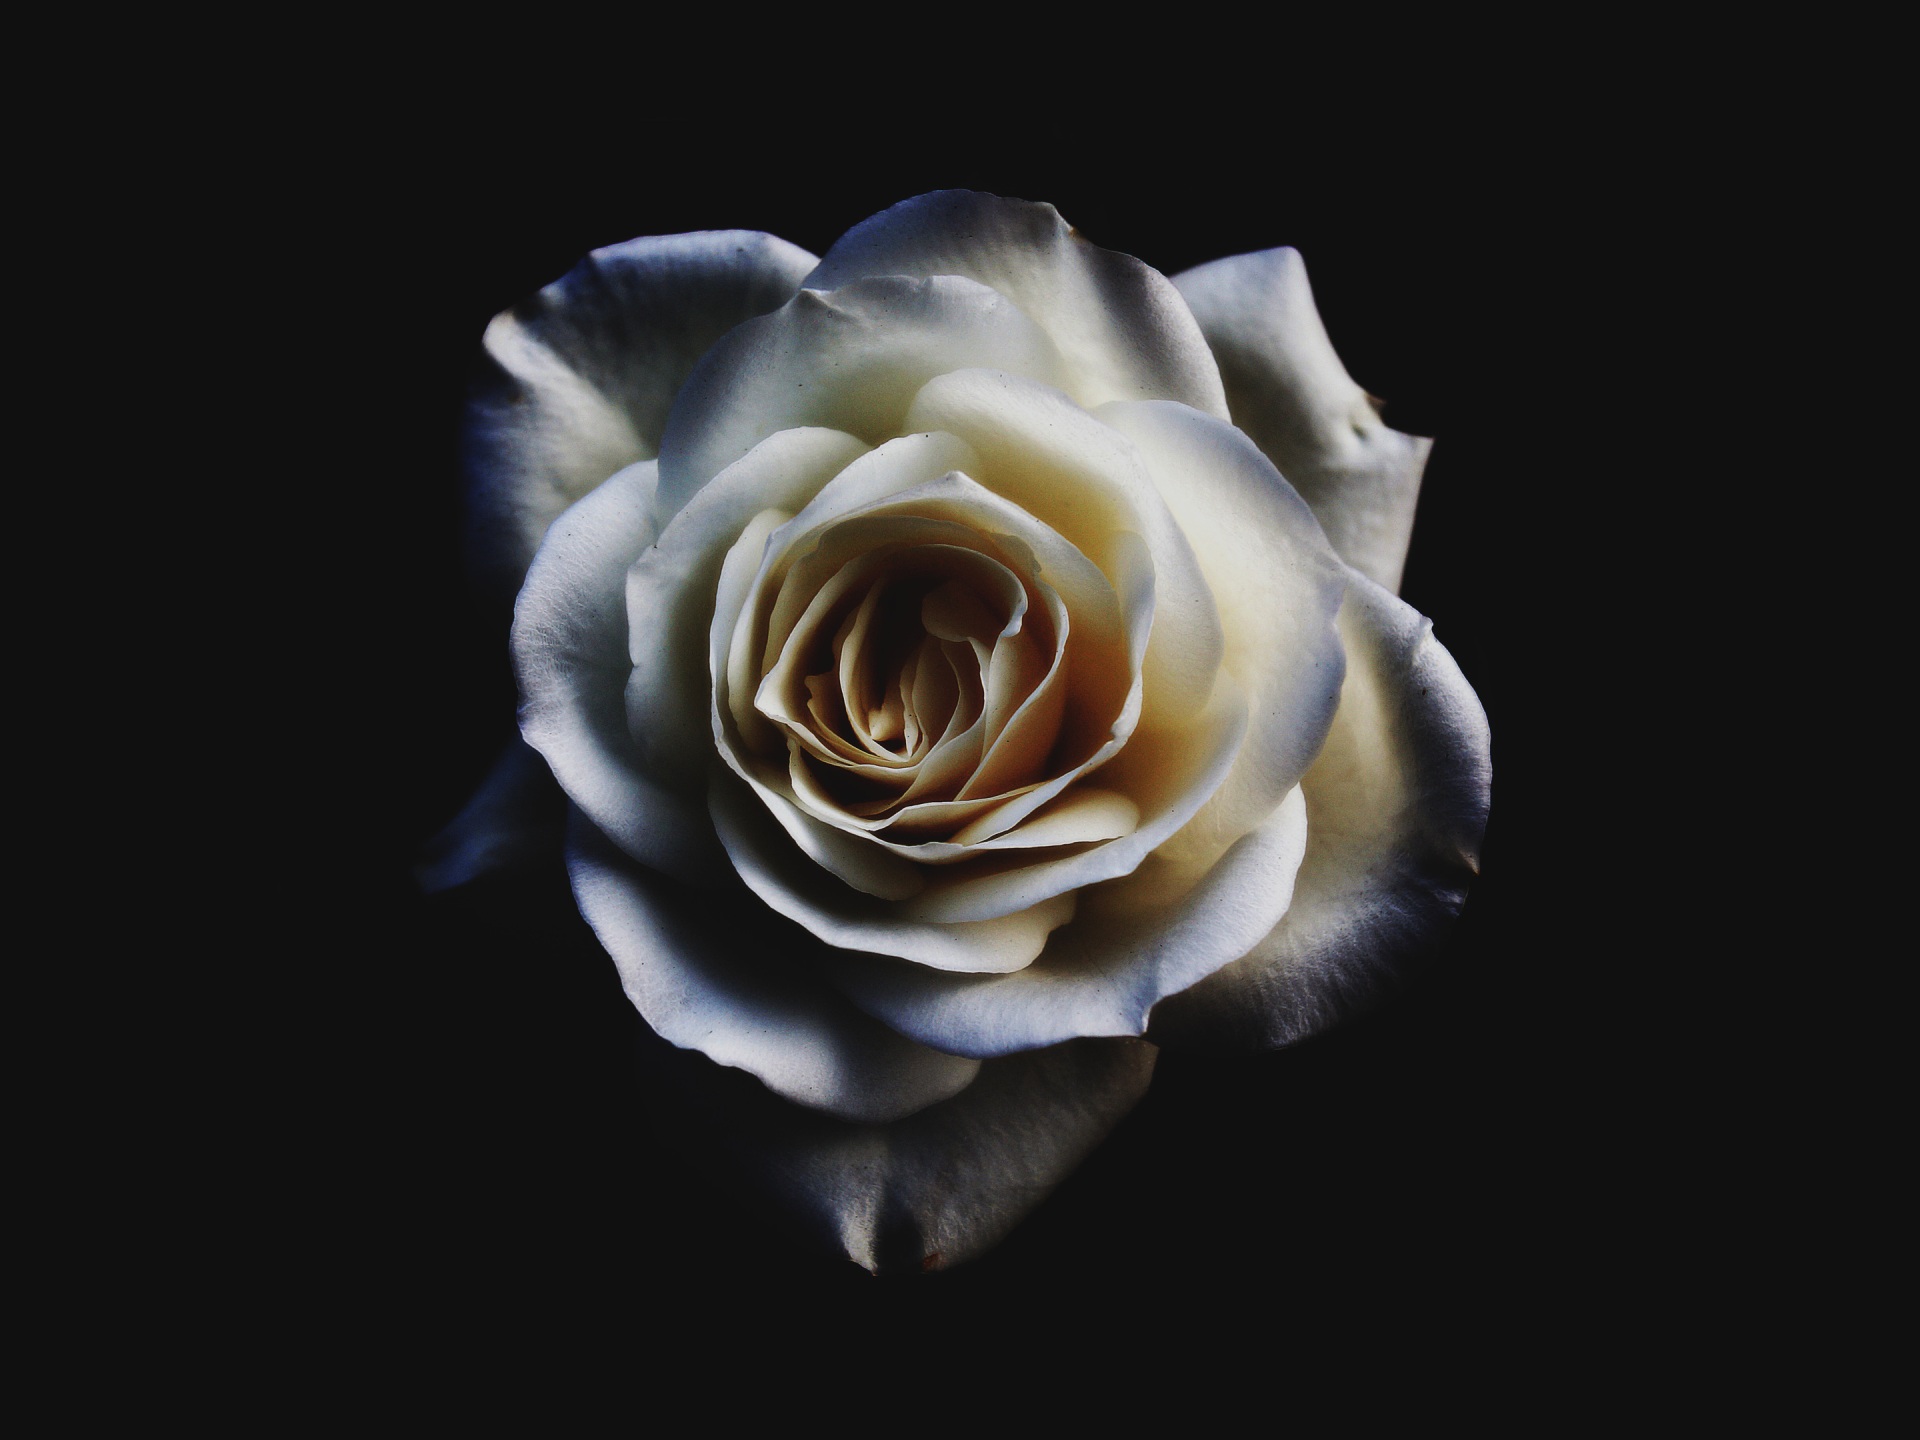 White Rose: Hoa hồng trắng luôn mang đến cho chúng ta cảm giác nhẹ nhàng và tình tứ. Vậy còn hoa hồng trắng trong bức ảnh này thì sao? Hãy cảm nhận sự tinh tế của nhiếp ảnh gia khi lăng-xê vẻ đẹp tinh khôi của hoa hồng. Những cánh hoa trắng như nhung với họa tiết nổi bật chắc chắn sẽ khiến bạn bất ngờ.